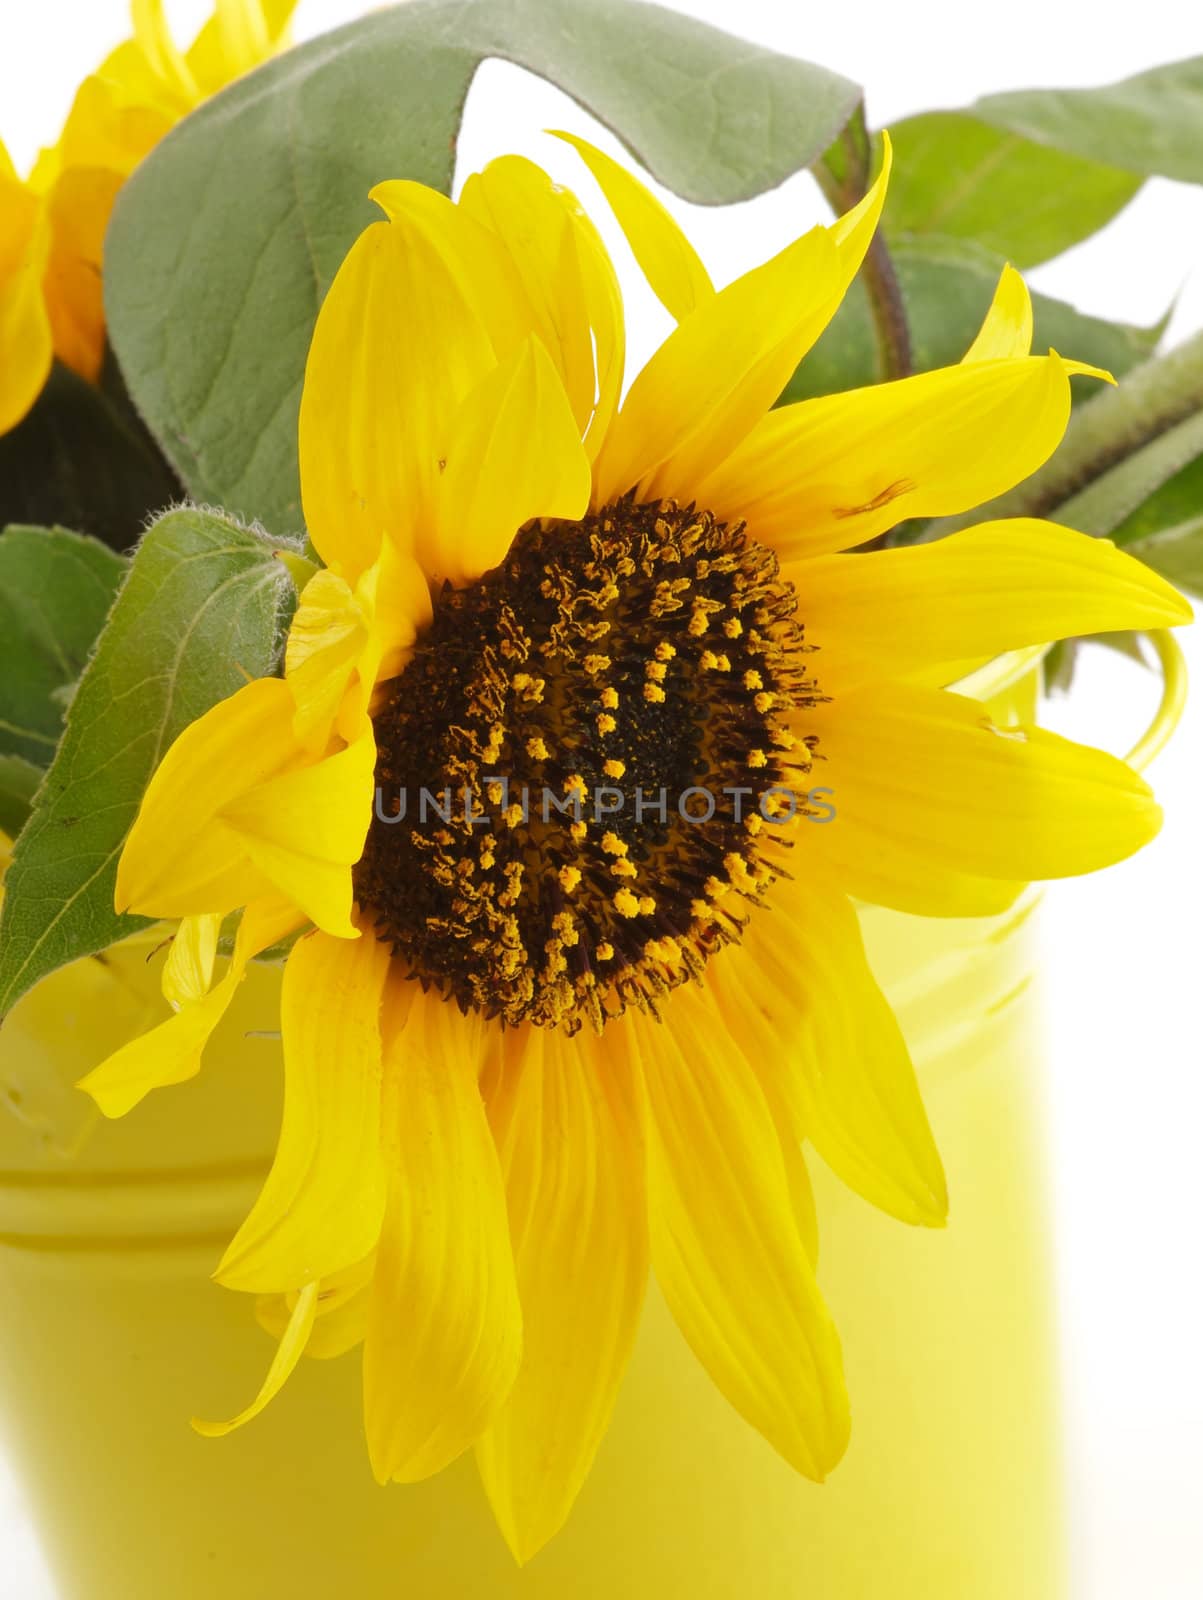 Sunflower in Yellow Bucket by zhekos